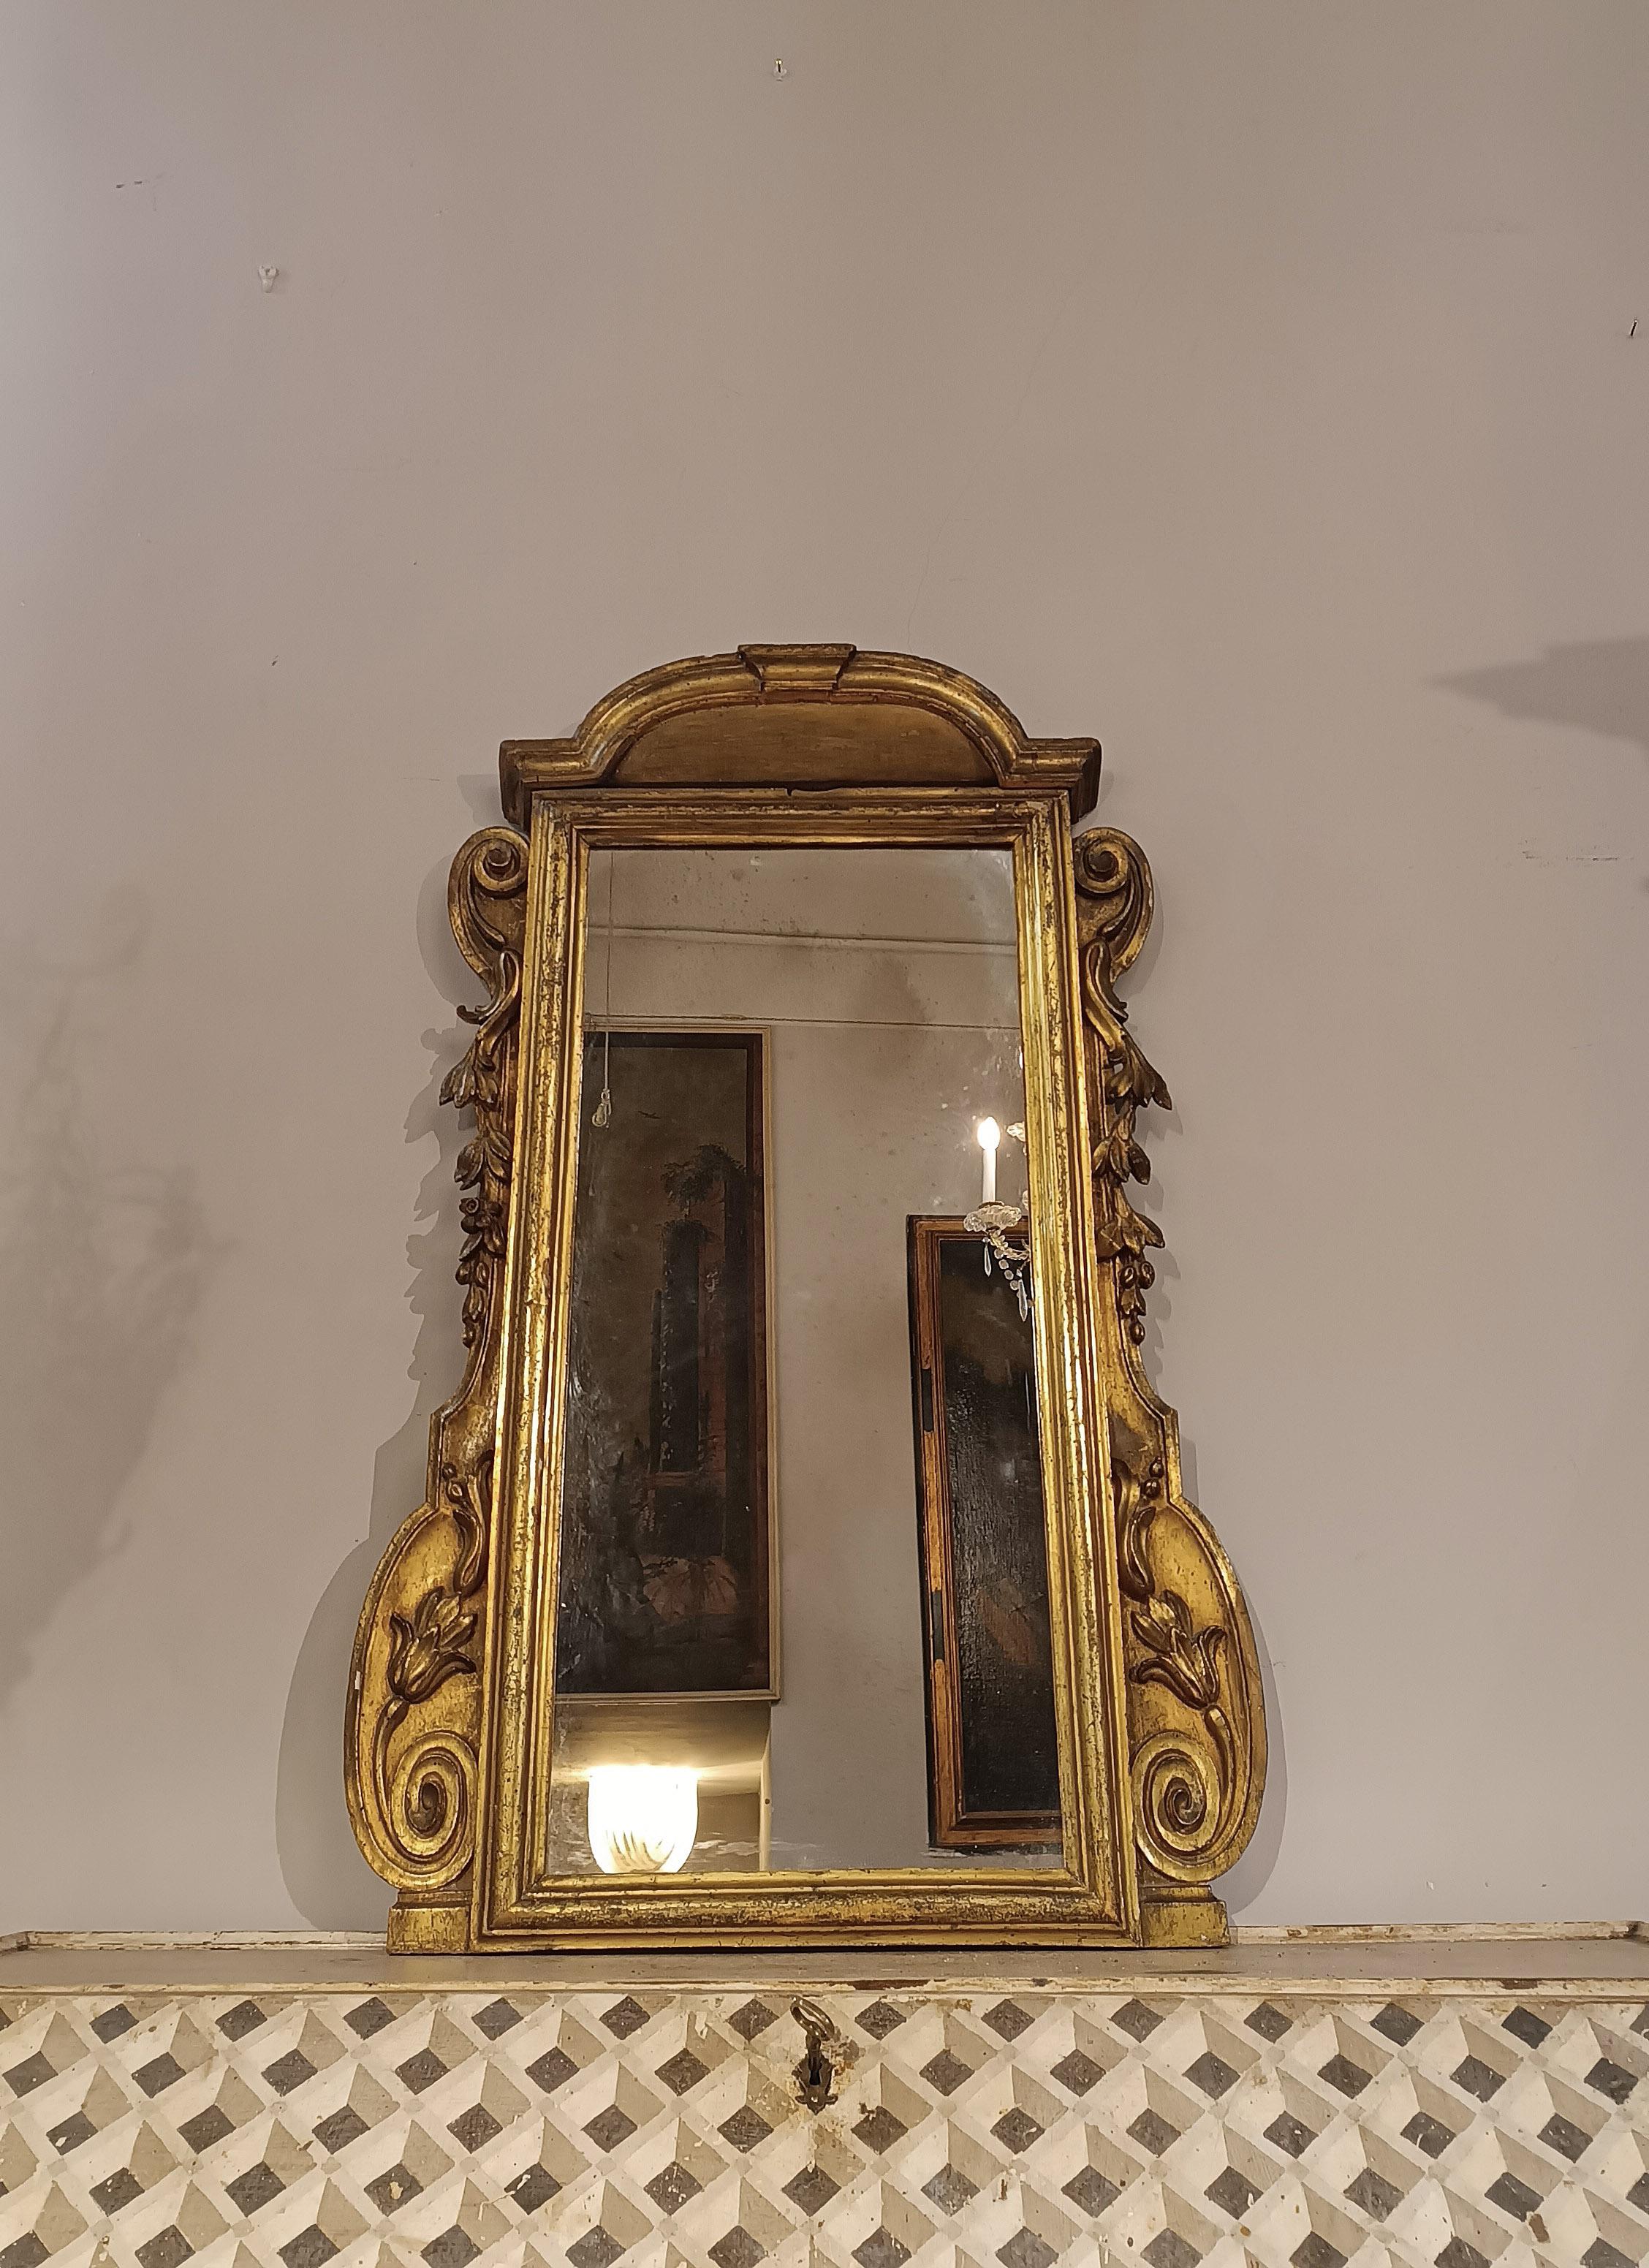 Fascinant petit miroir en bois sculpté et doré à la mecca, caractérisé par un cadre décoré de rinceaux et d'éléments végétaux. Le cimatium, une structure architecturale et un encorbellement, ajoute encore au charme de l'ensemble. Sa petite taille